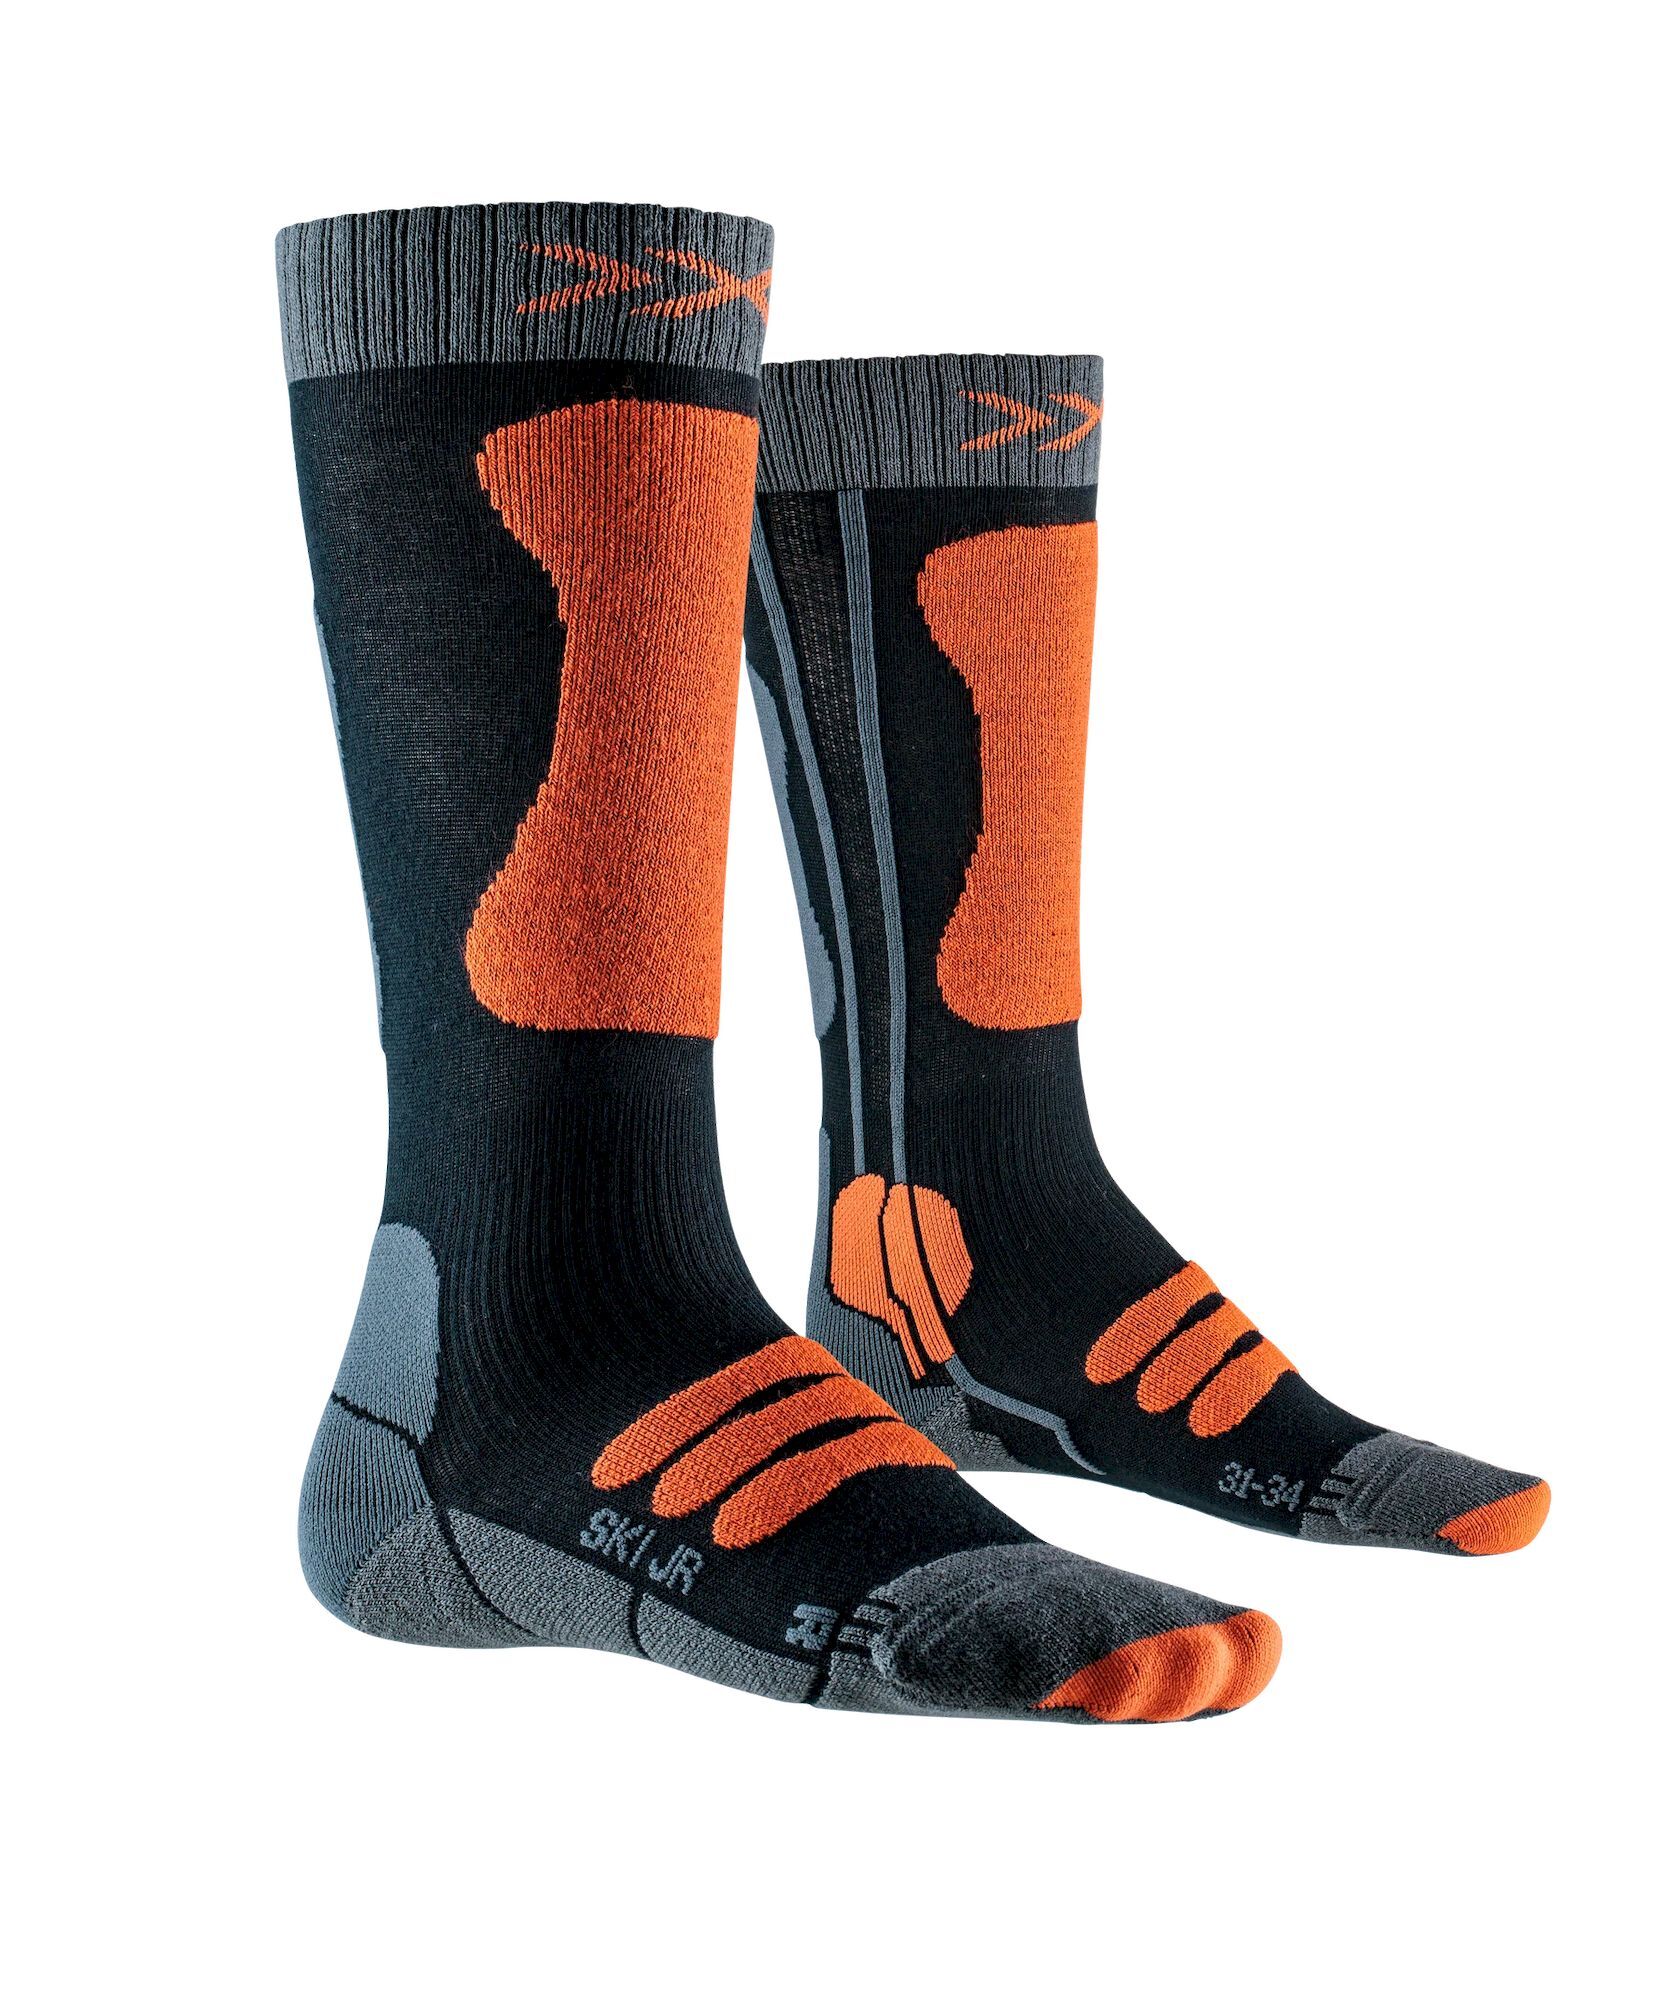 X-Socks Ski Junior 4.0 - Ski socks - Kids